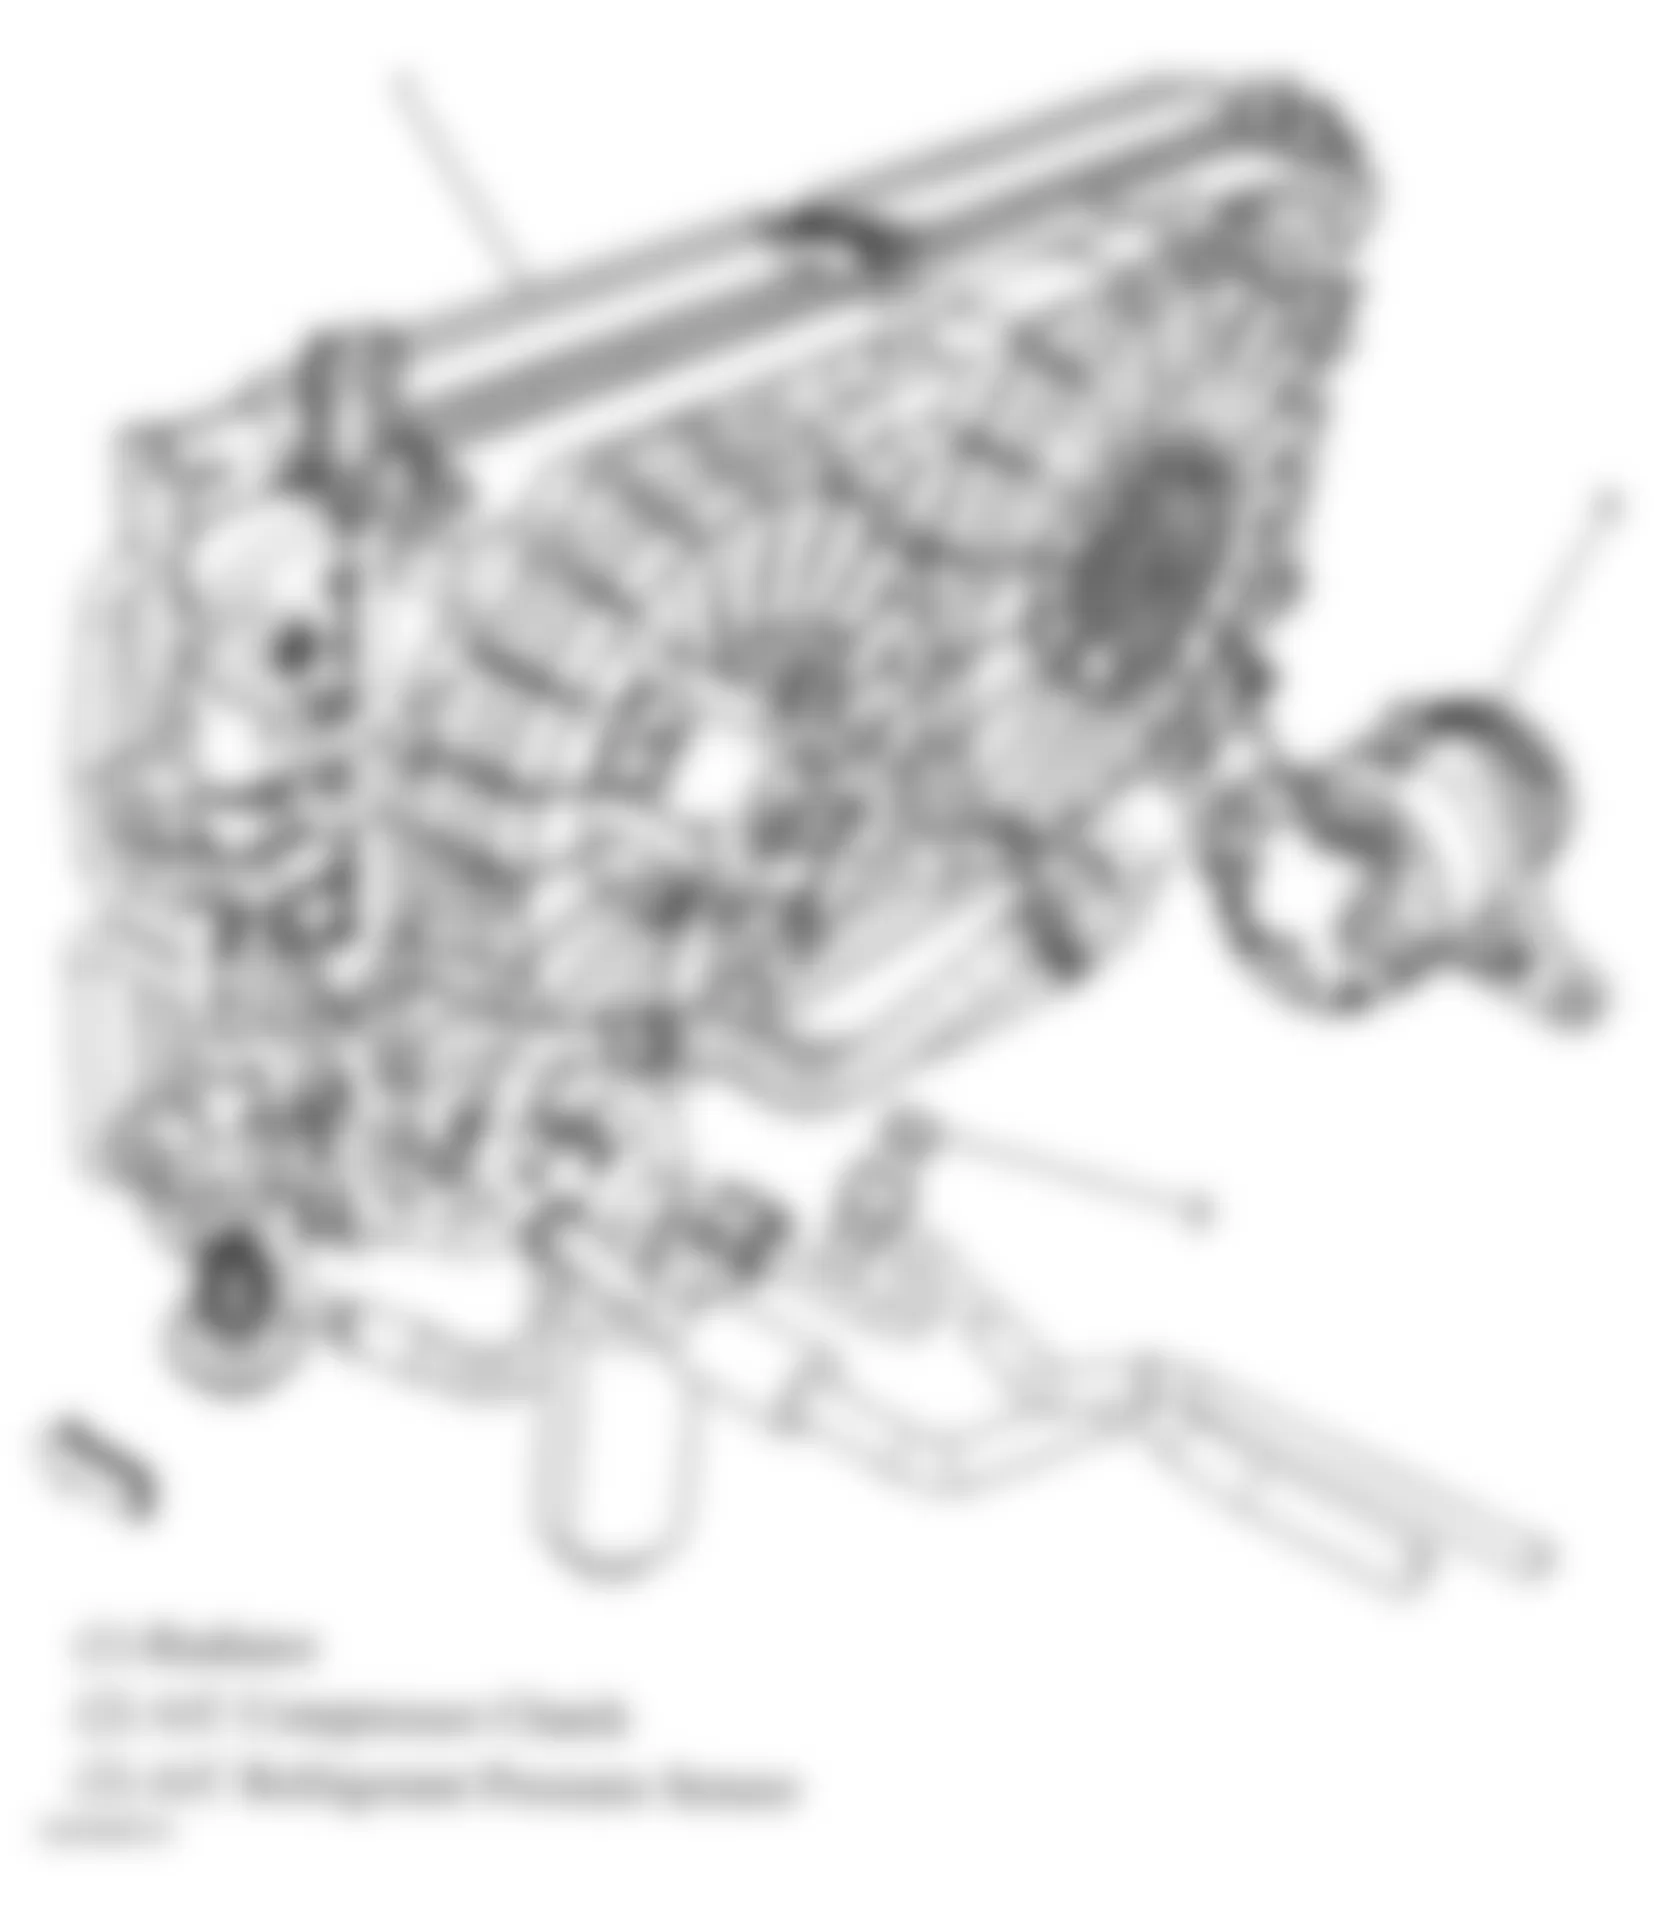 Buick Allure CXL 2006 - Component Locations -  A/C Components